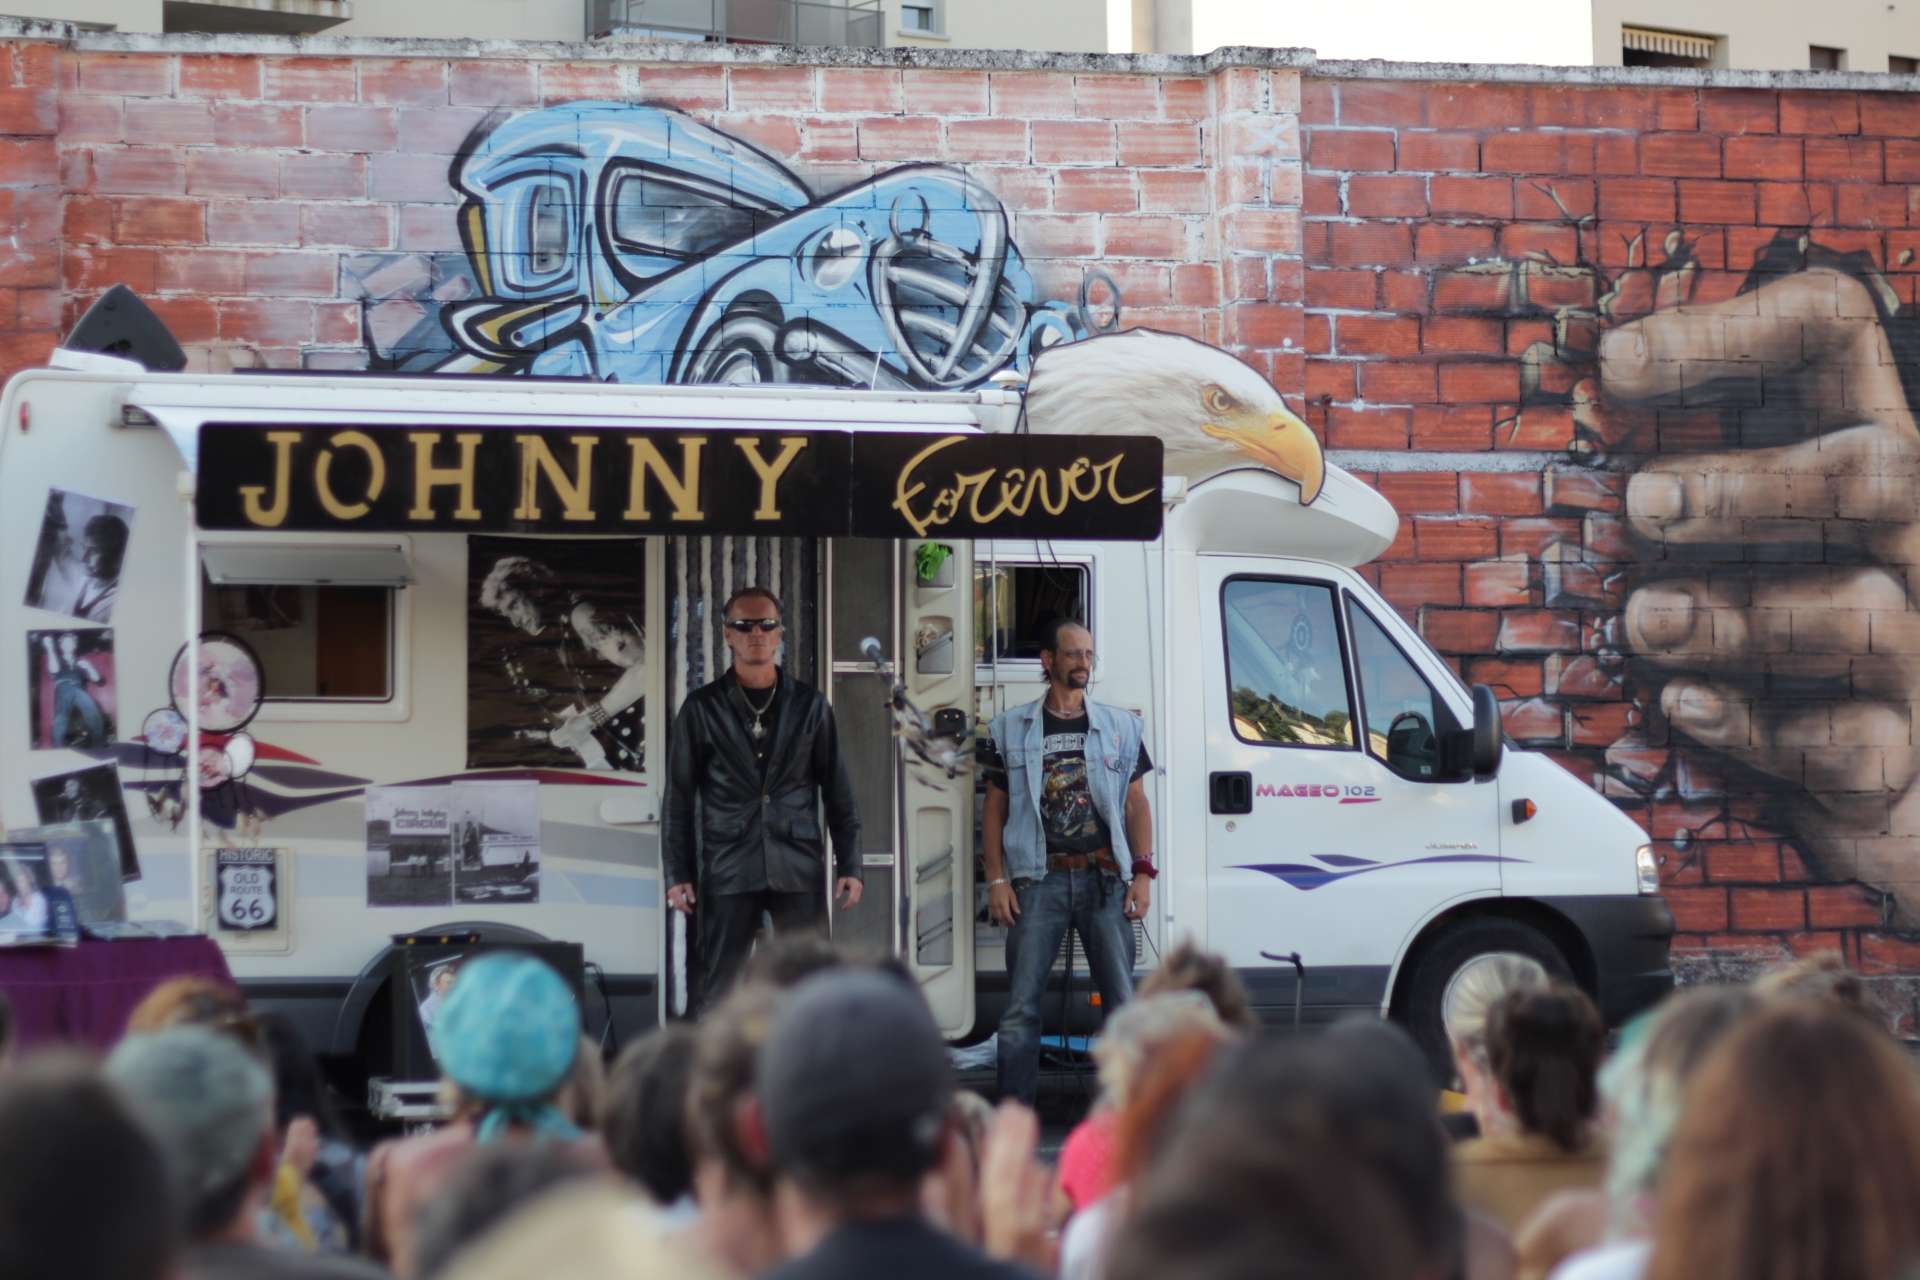 Un camping car est montré avec deux garde du corps. L'écriture "Johnny forever" est inscrite sur le camping-car.